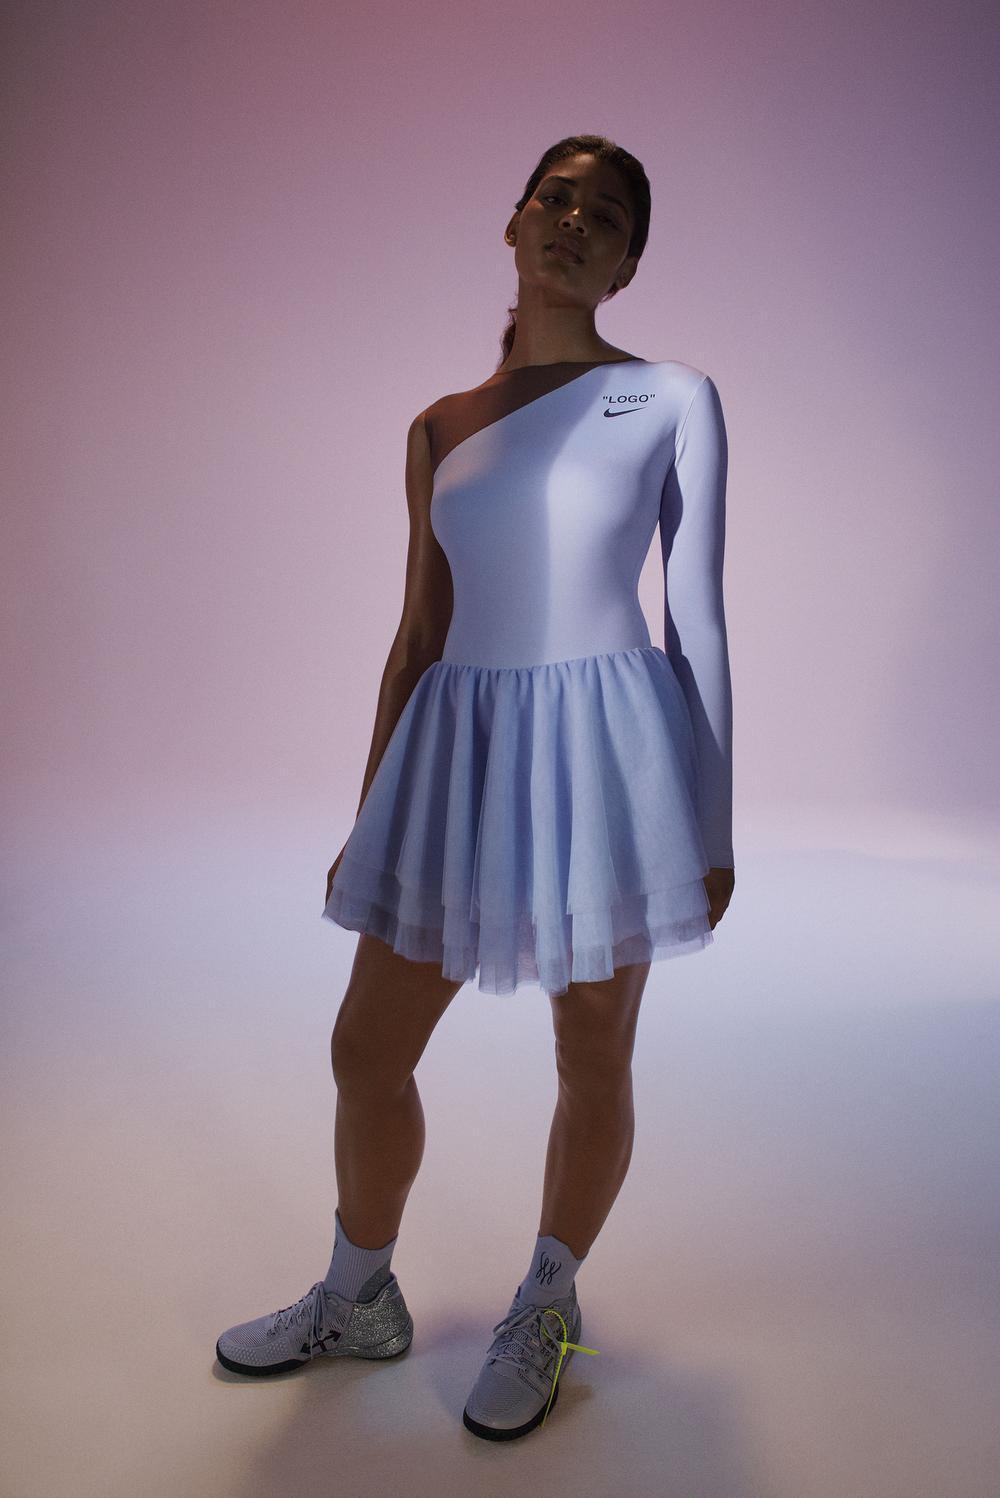 La robe-tutu de Serena Williams pour l'US Open